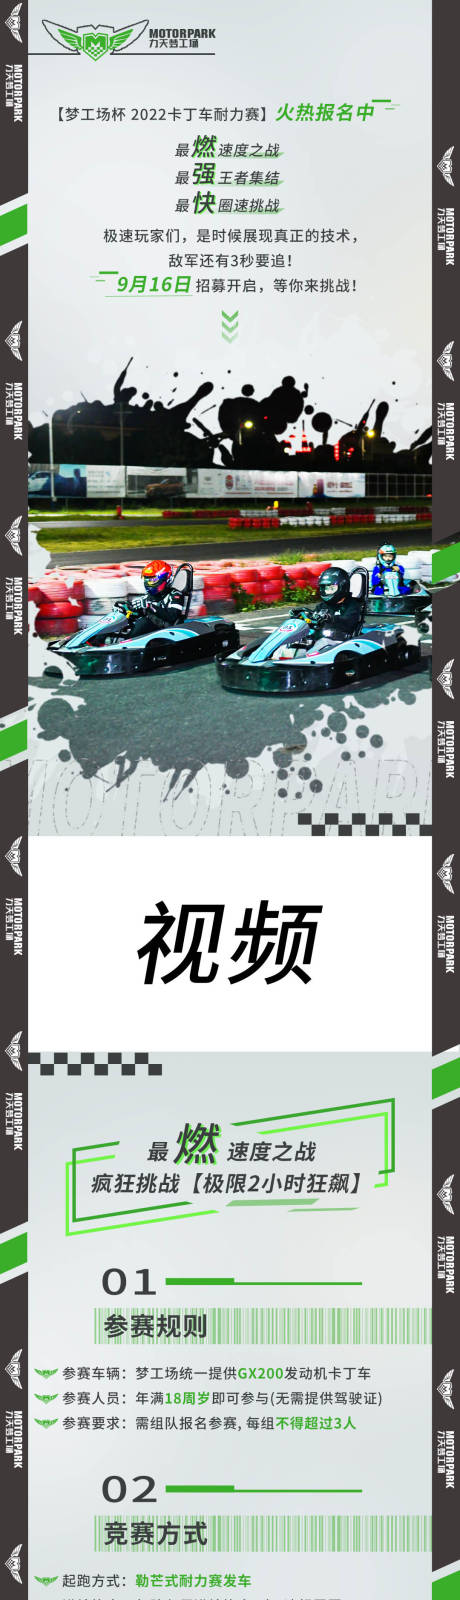 卡丁车汽车赛事活动营销推广长图